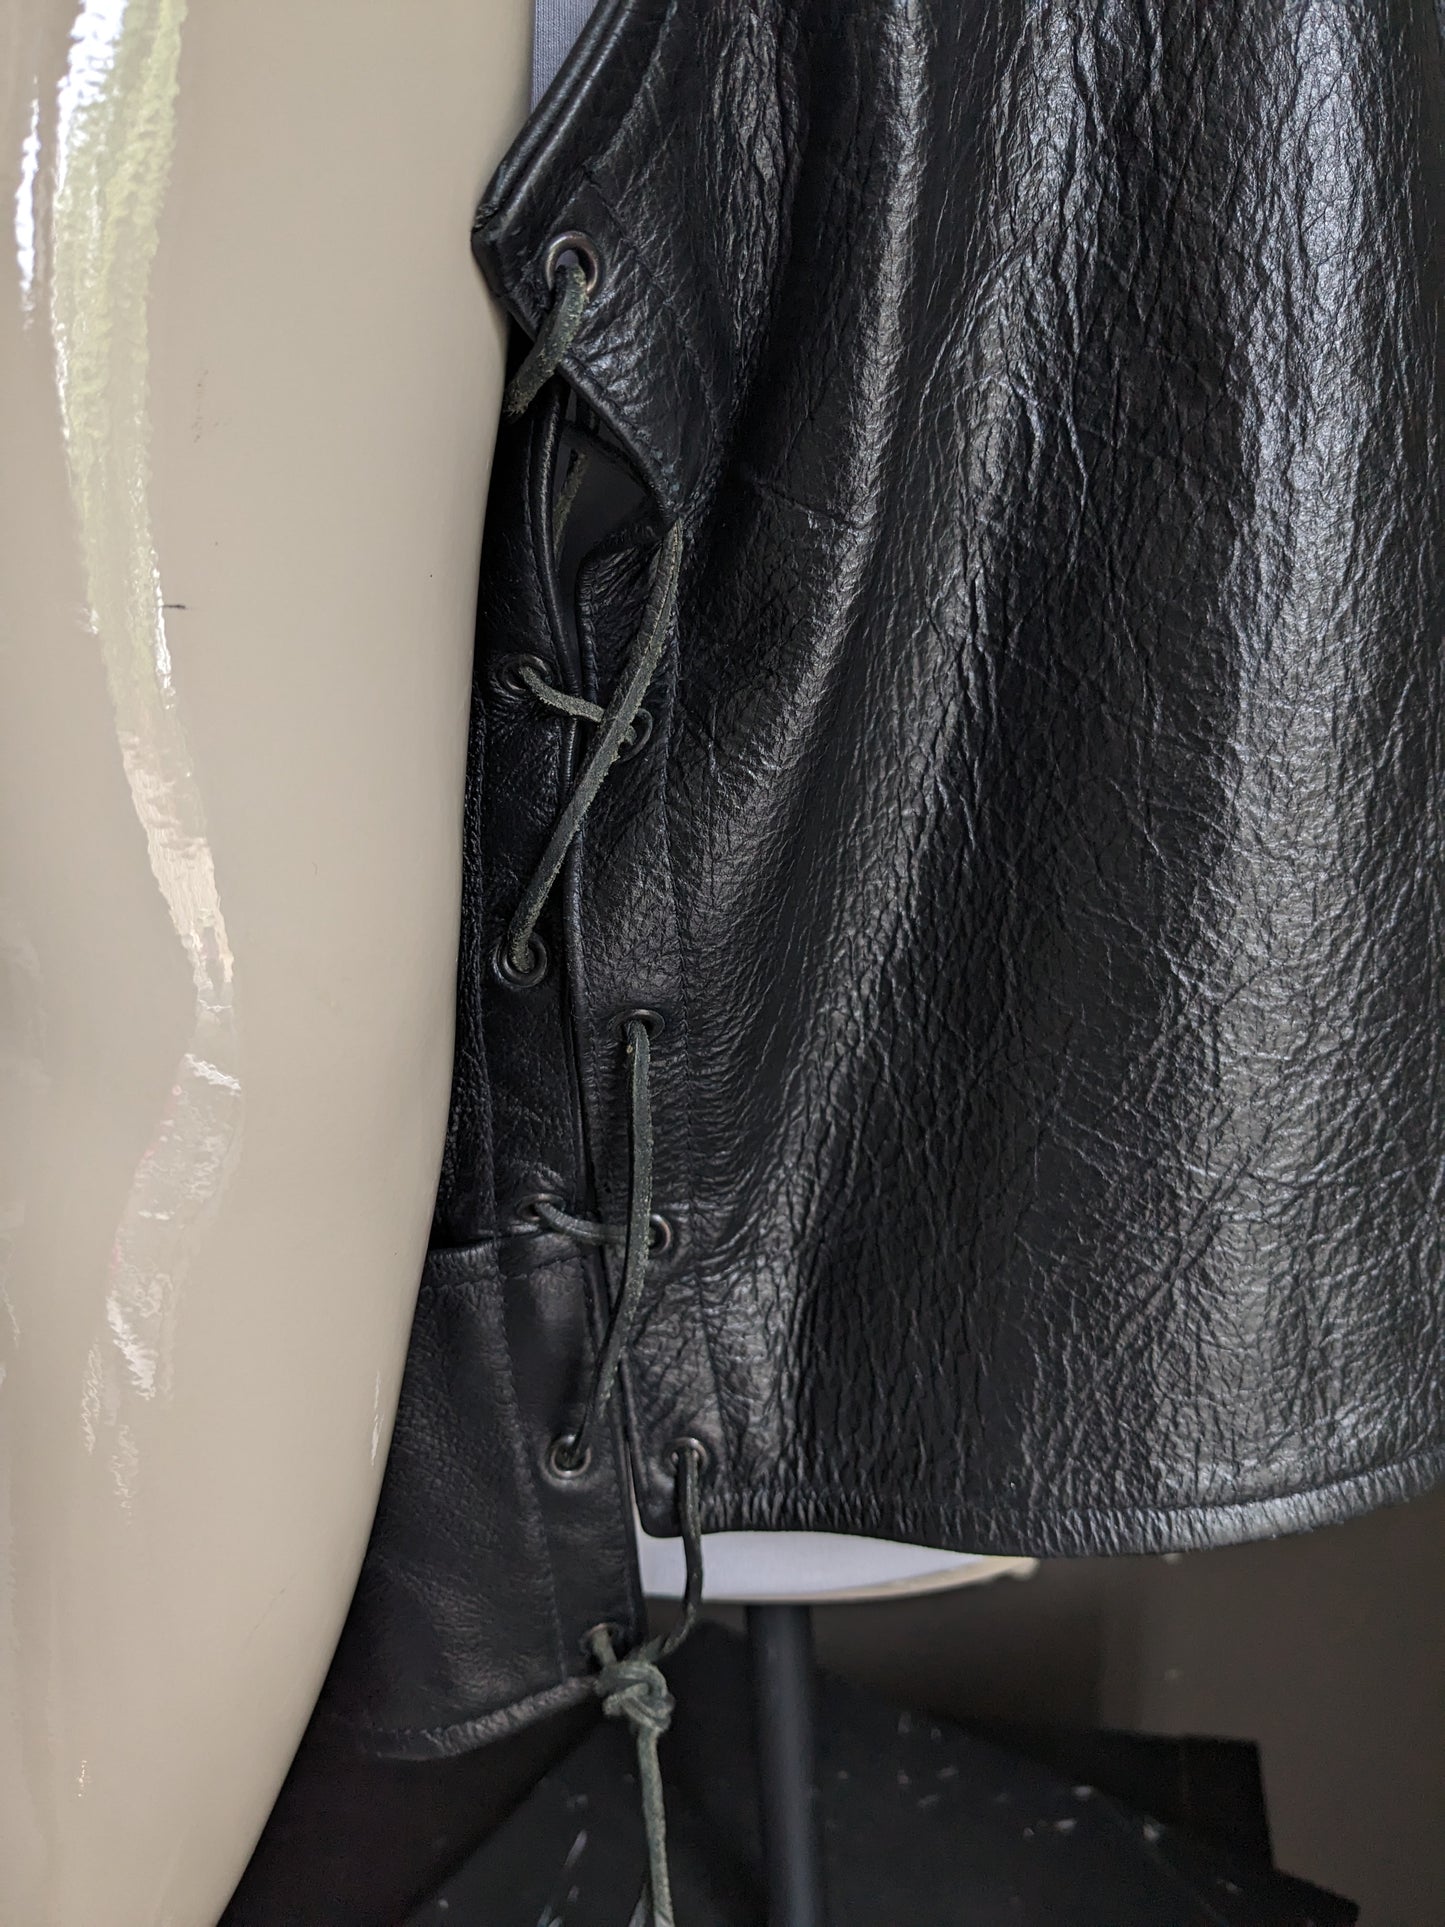 Travante chaleco de motociclista de cuero de cuero maestro. A doble cara con aplicaciones de encaje y spas. Color negro. Tamaño 2xl.